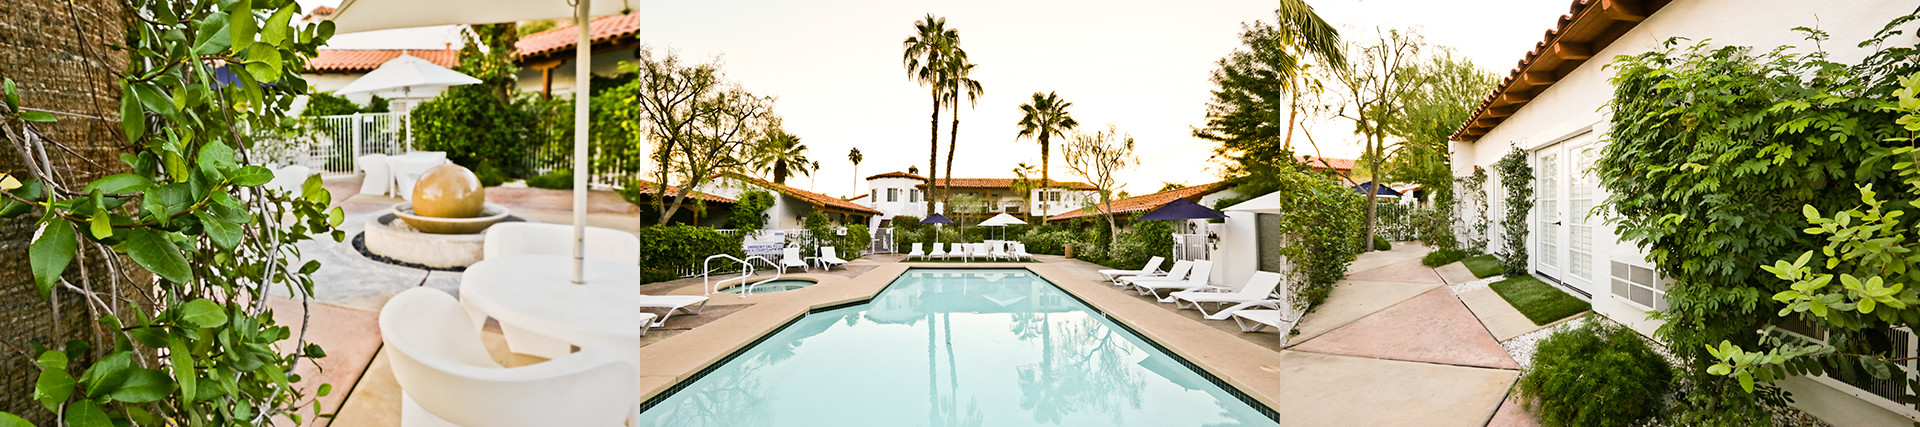 Alcazar Hotel Palm Springs 5